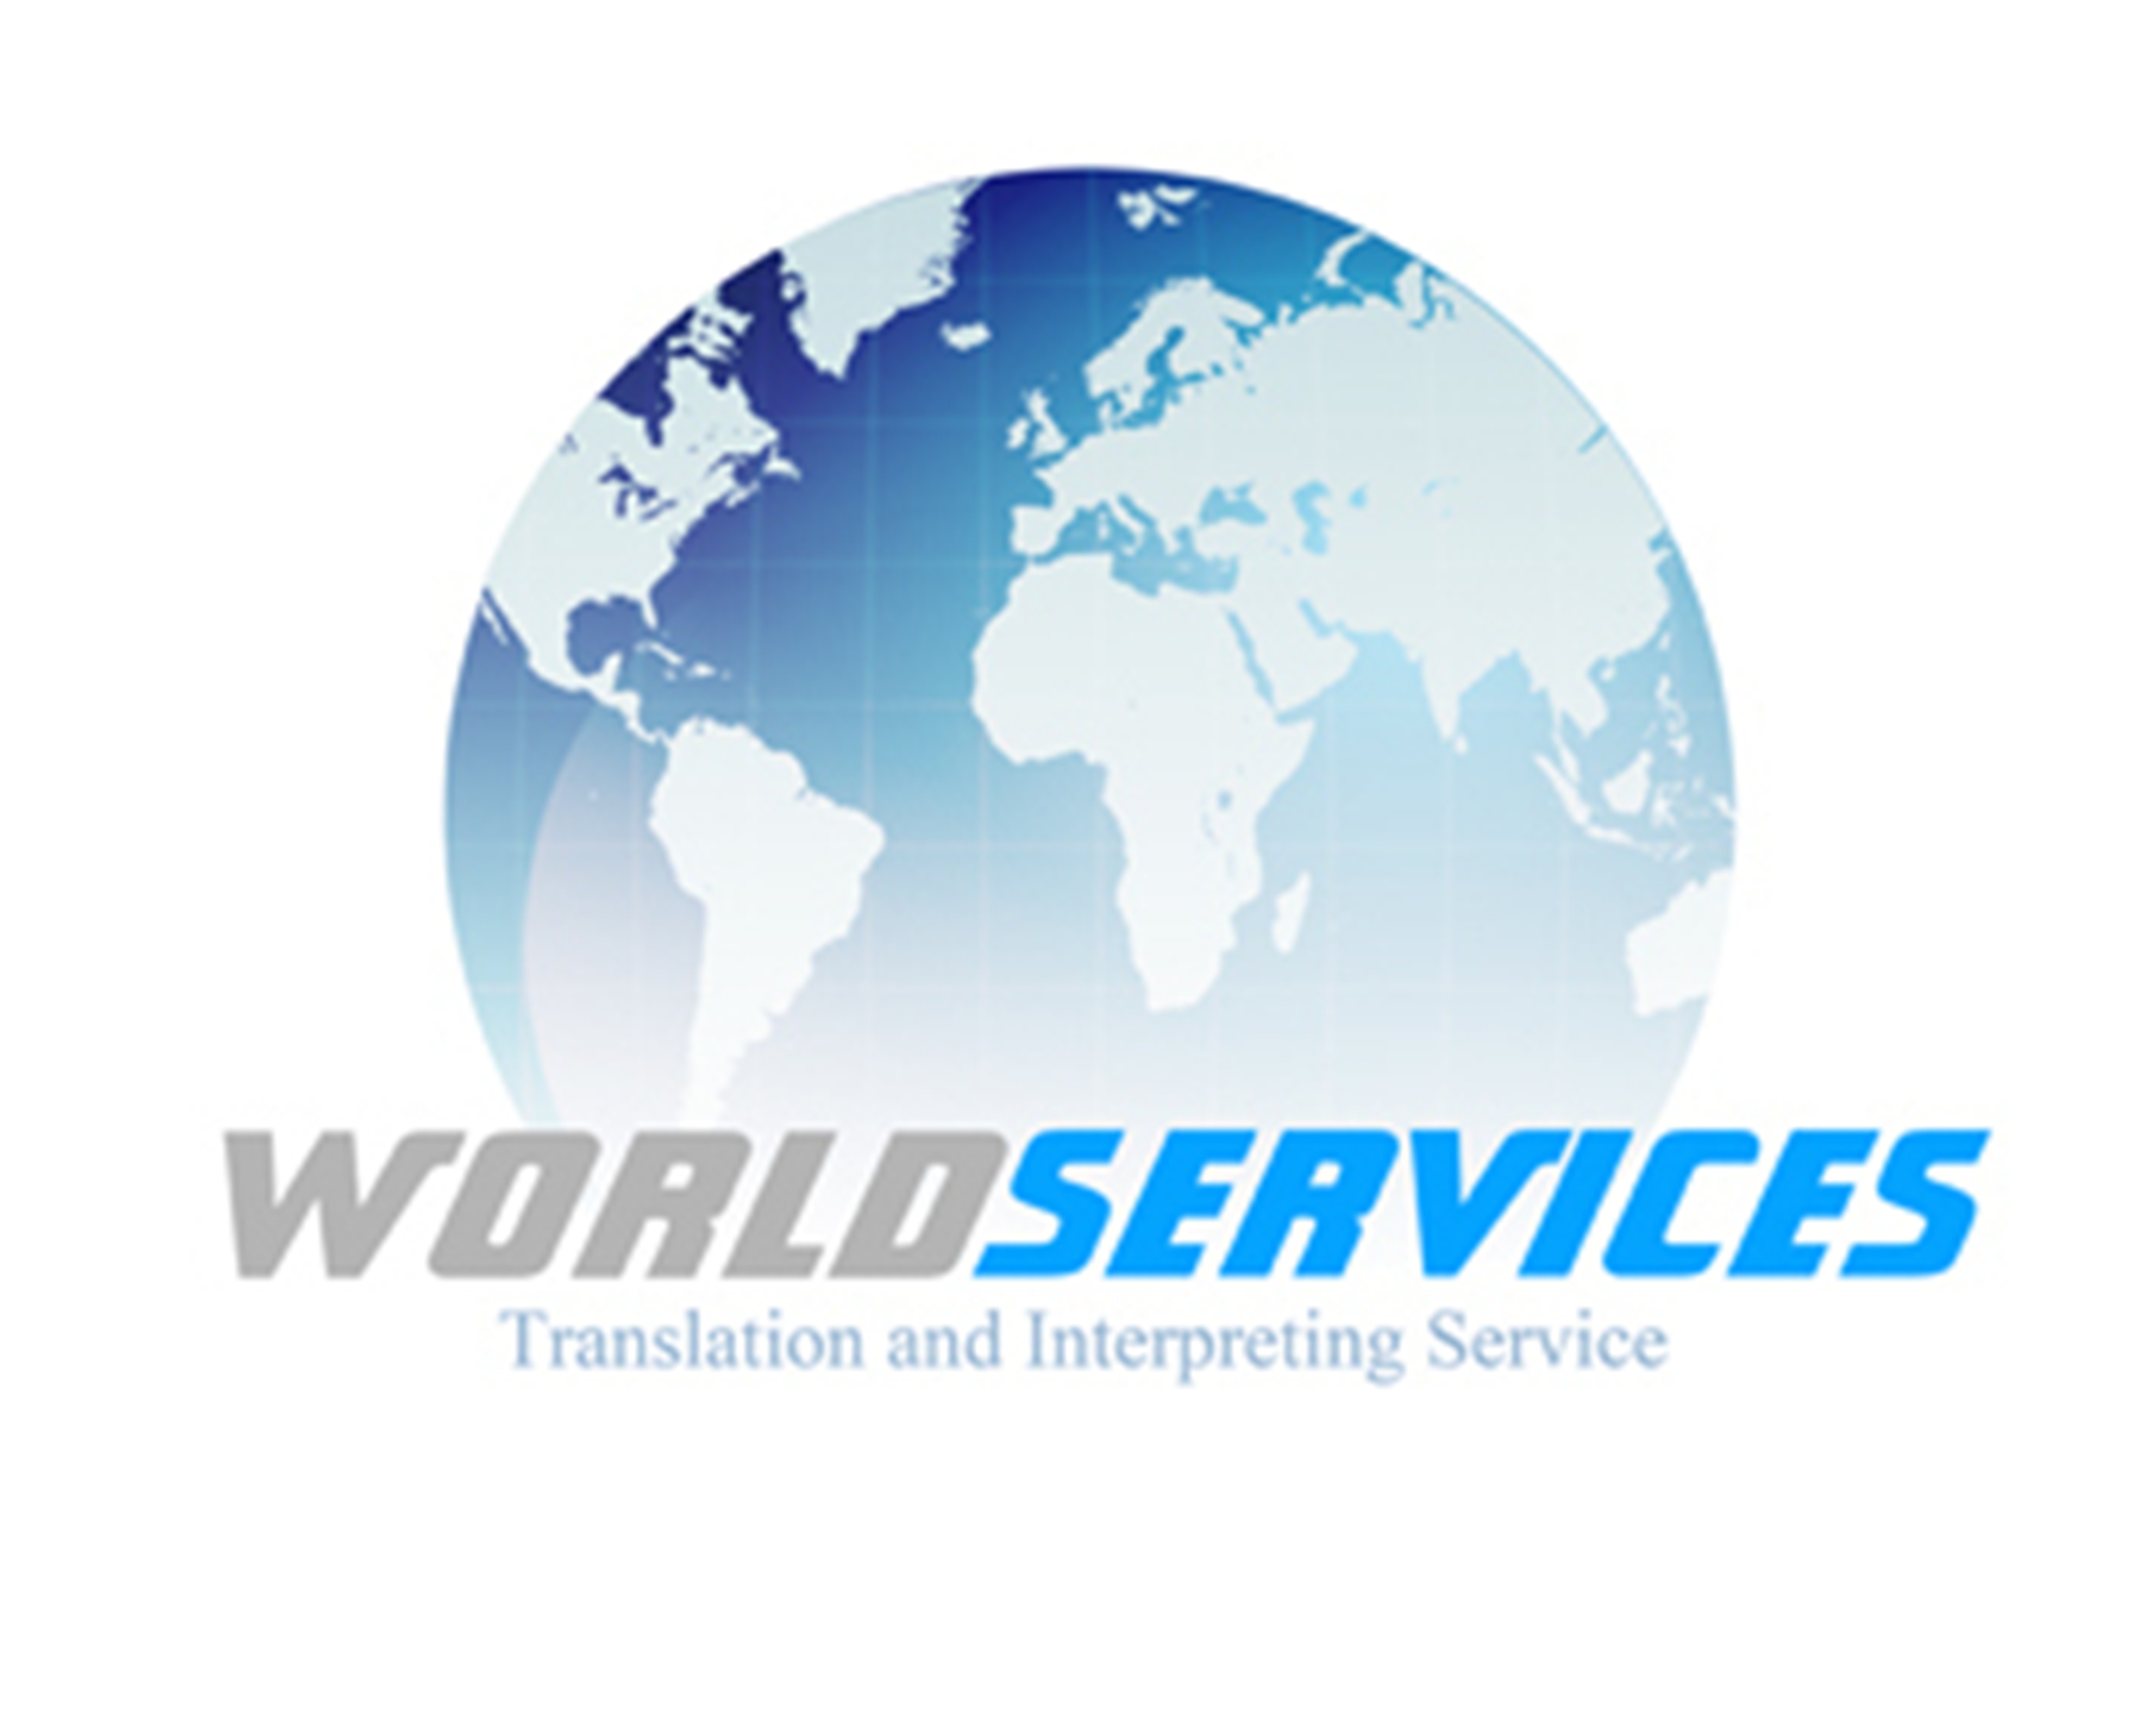 Ворлд сервис. World service. Translation service logo.